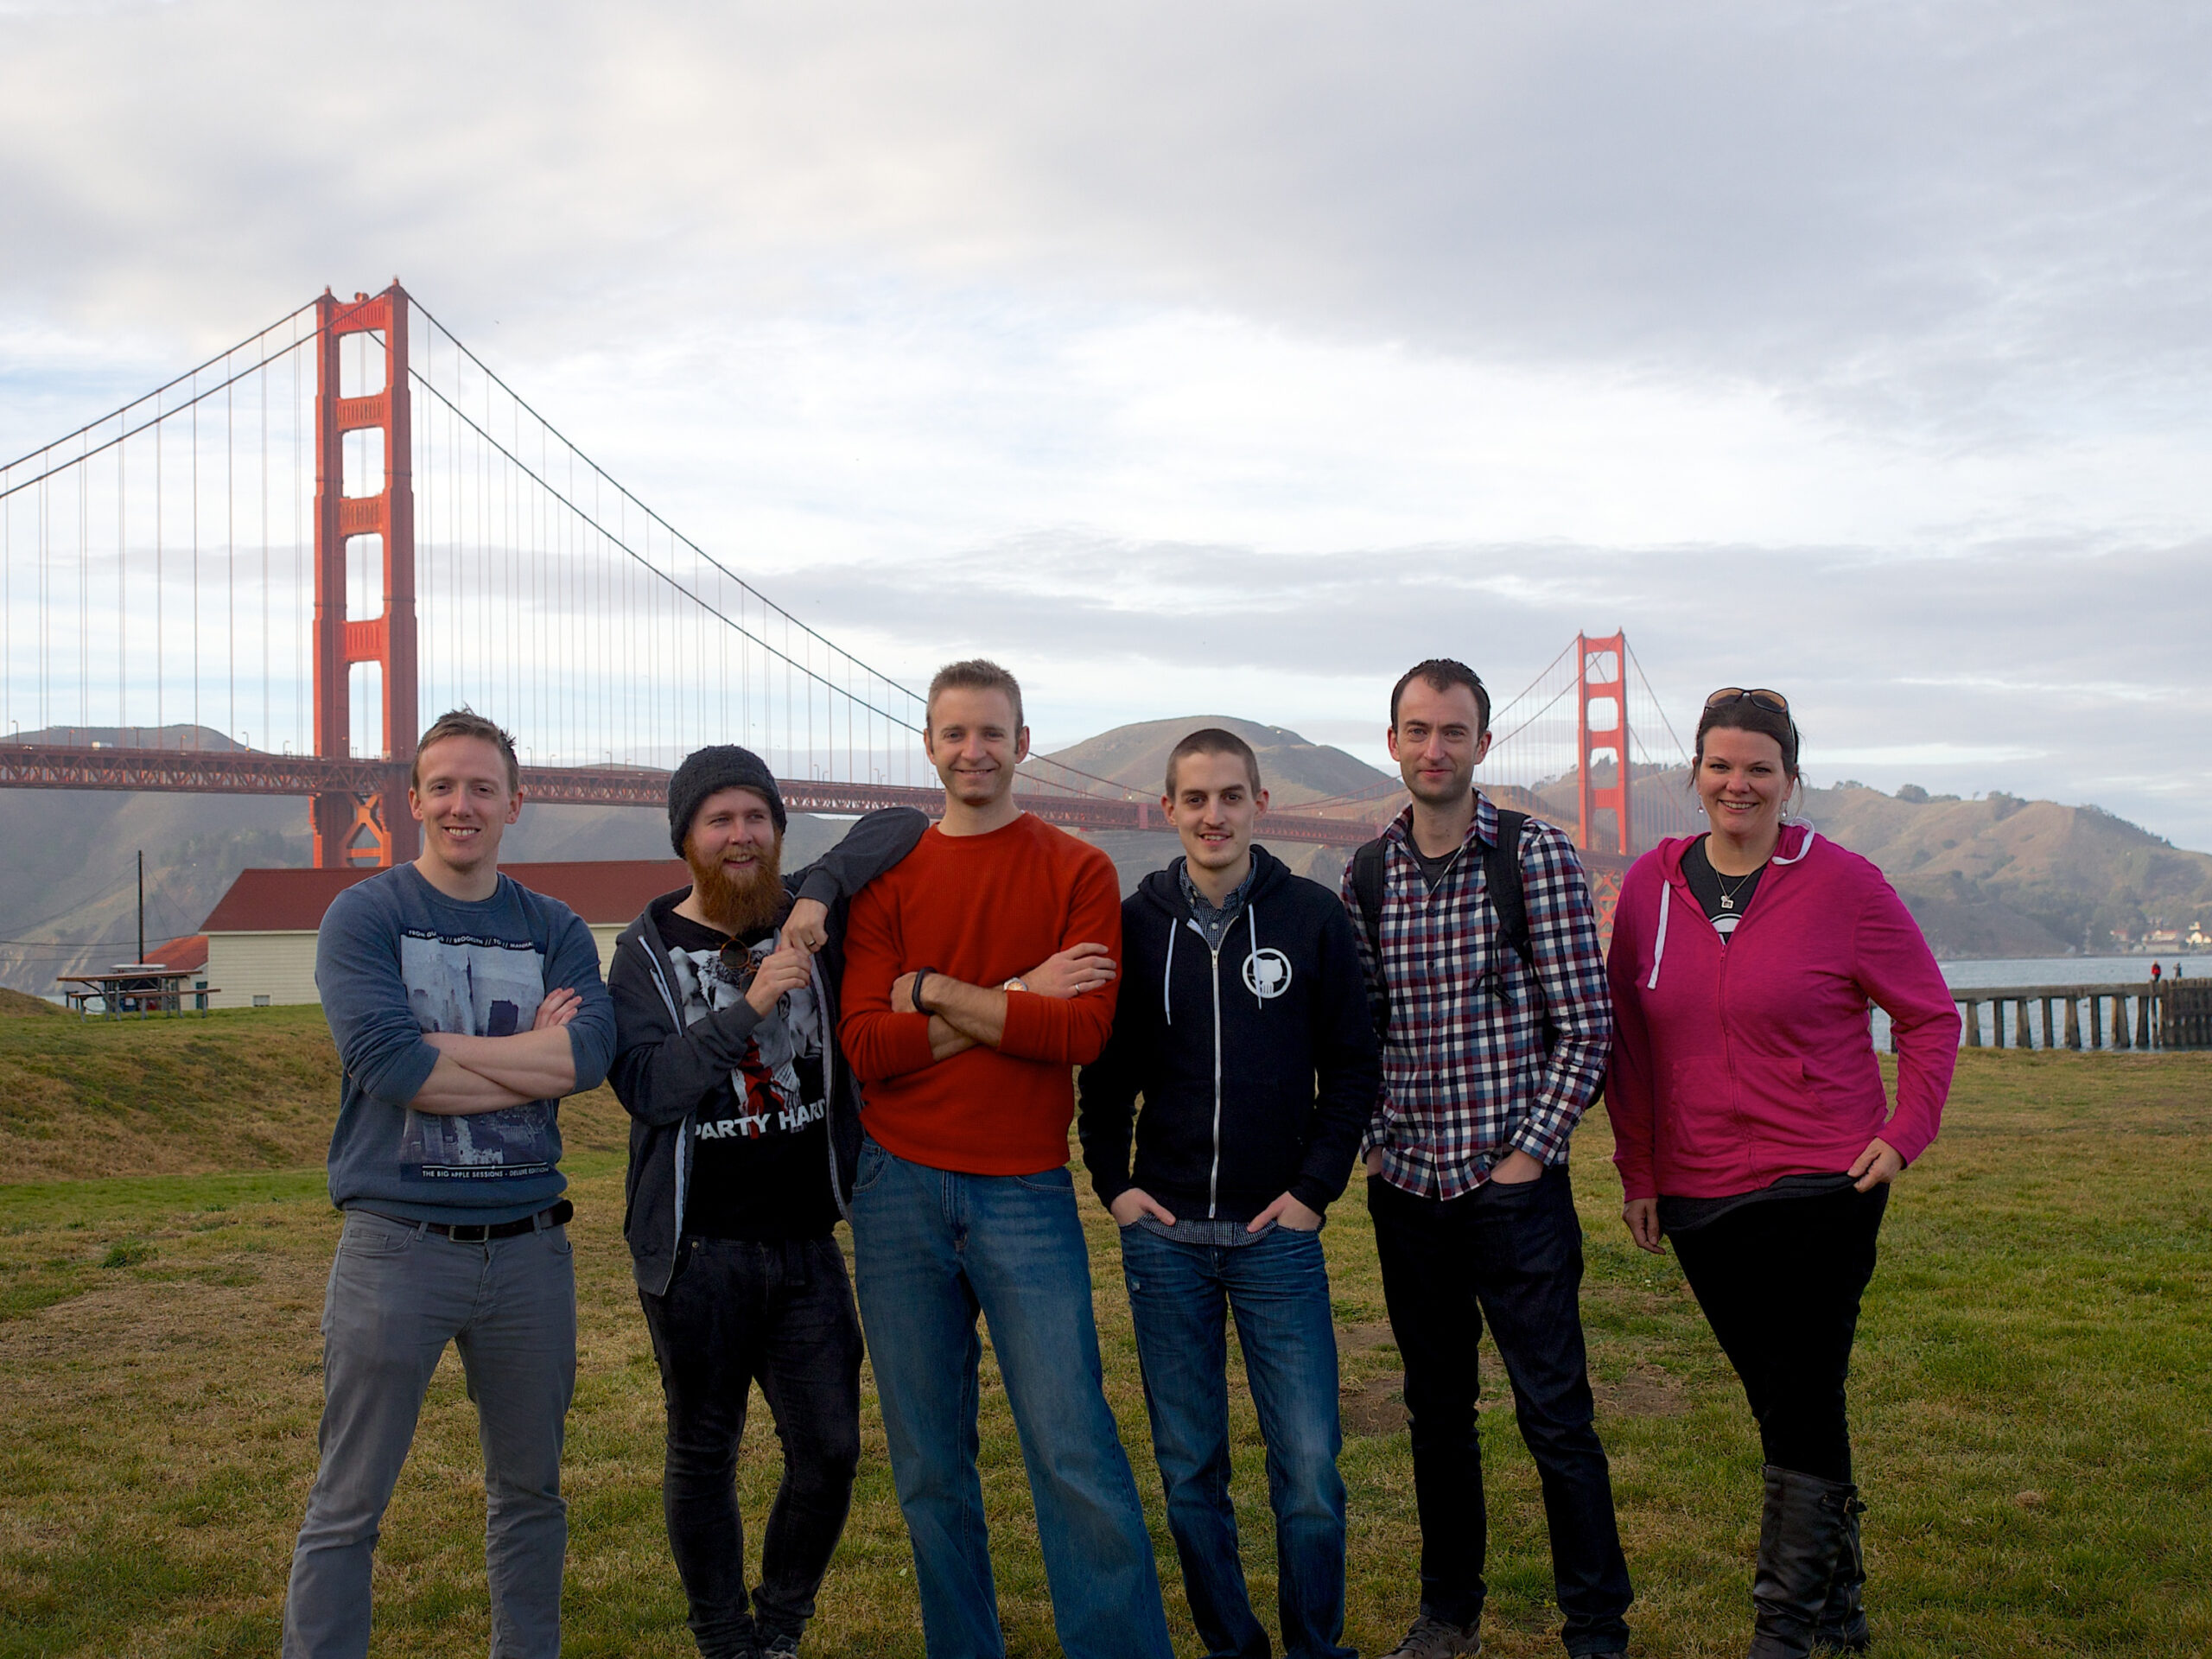 Golden Gate Bridge with Automatticians